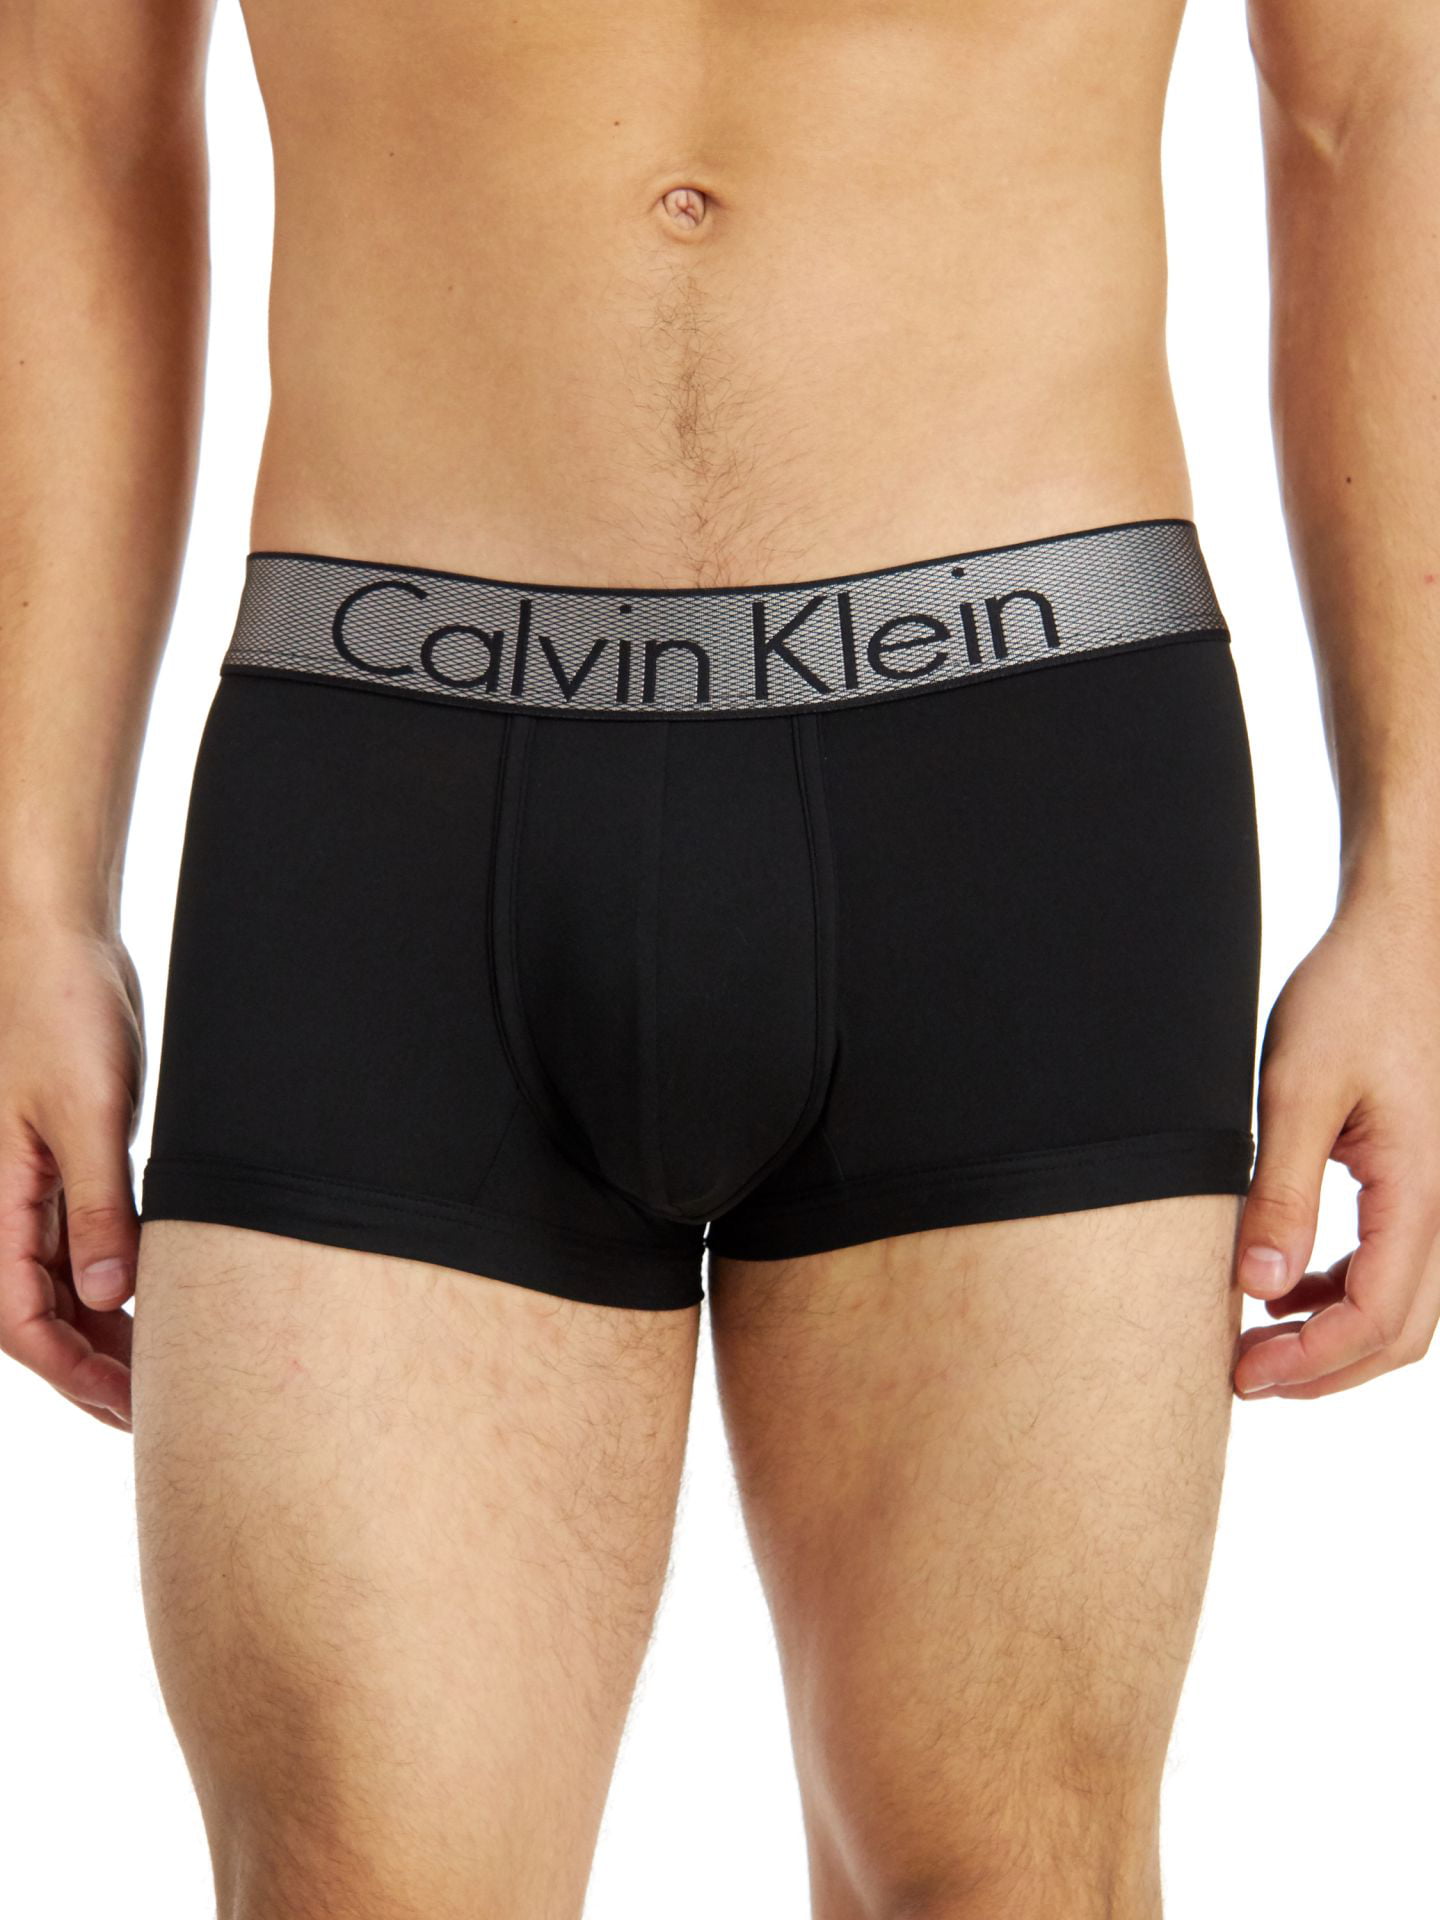 jukbeen Schuldig beheerder CALVIN KLEIN Intimates Black Low Rise Tagless Stretch Trunk Underwear XL -  Walmart.com